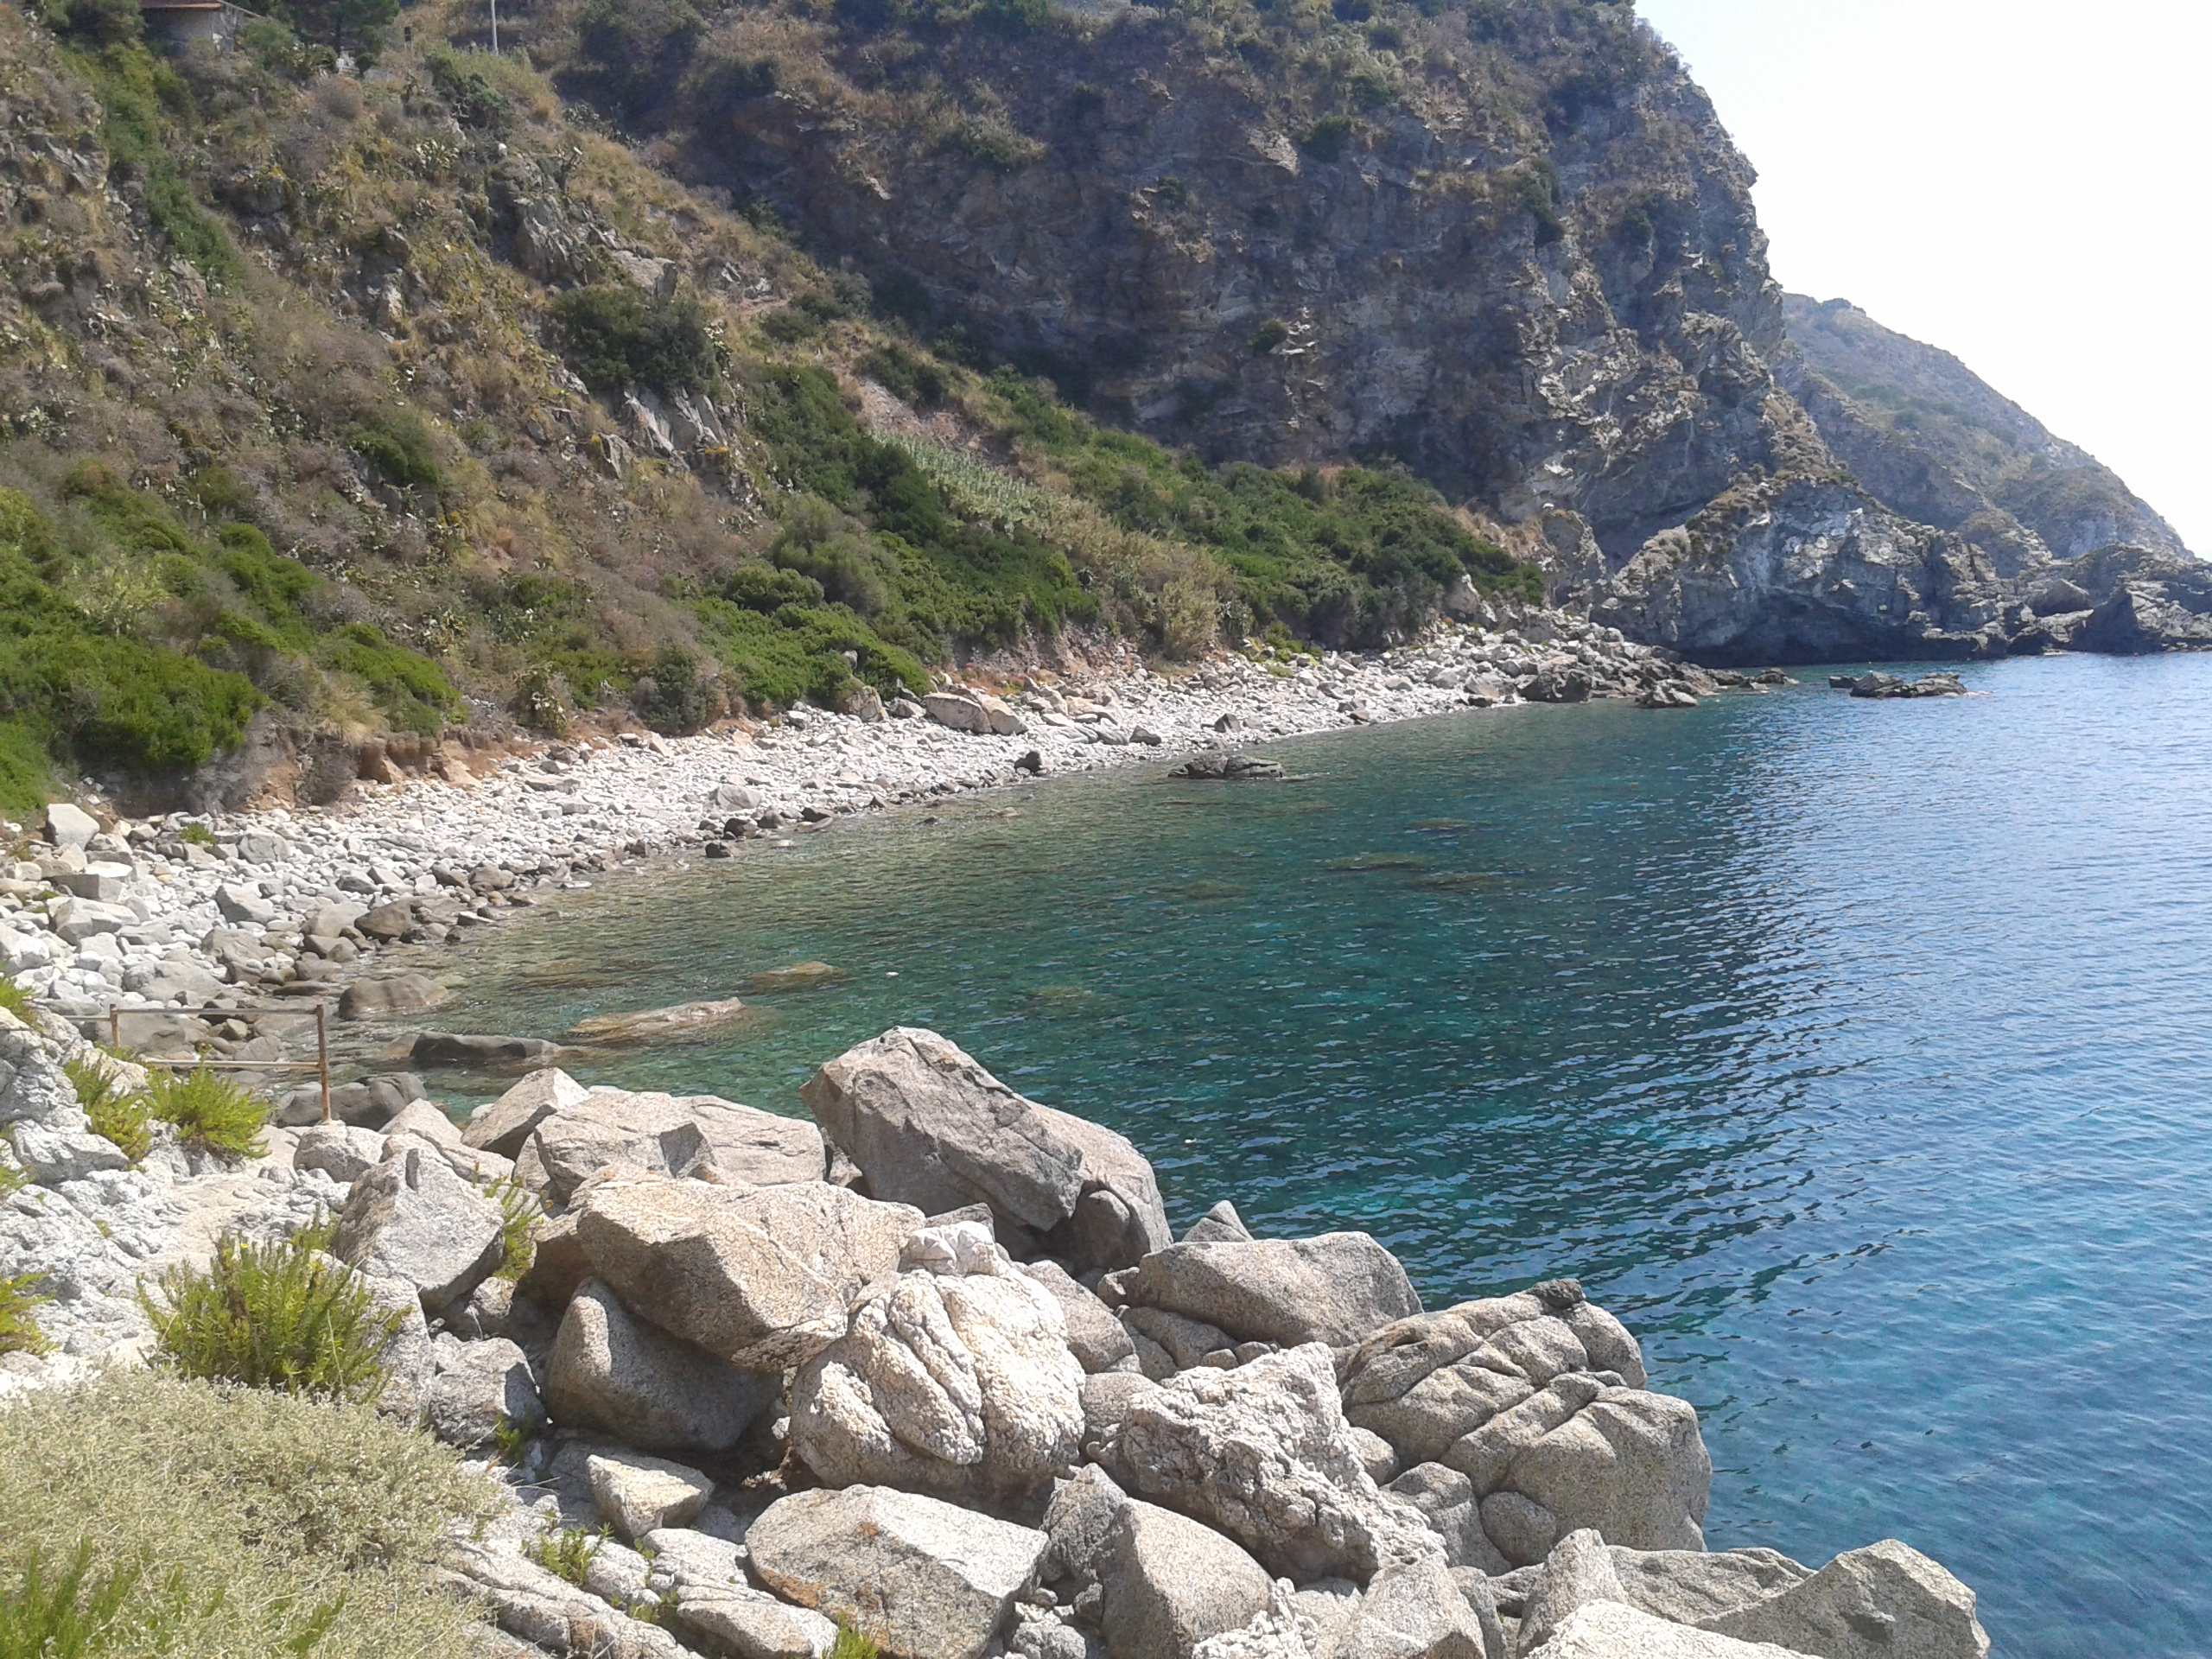 Le spiagge della Calabria angoli e bellezze